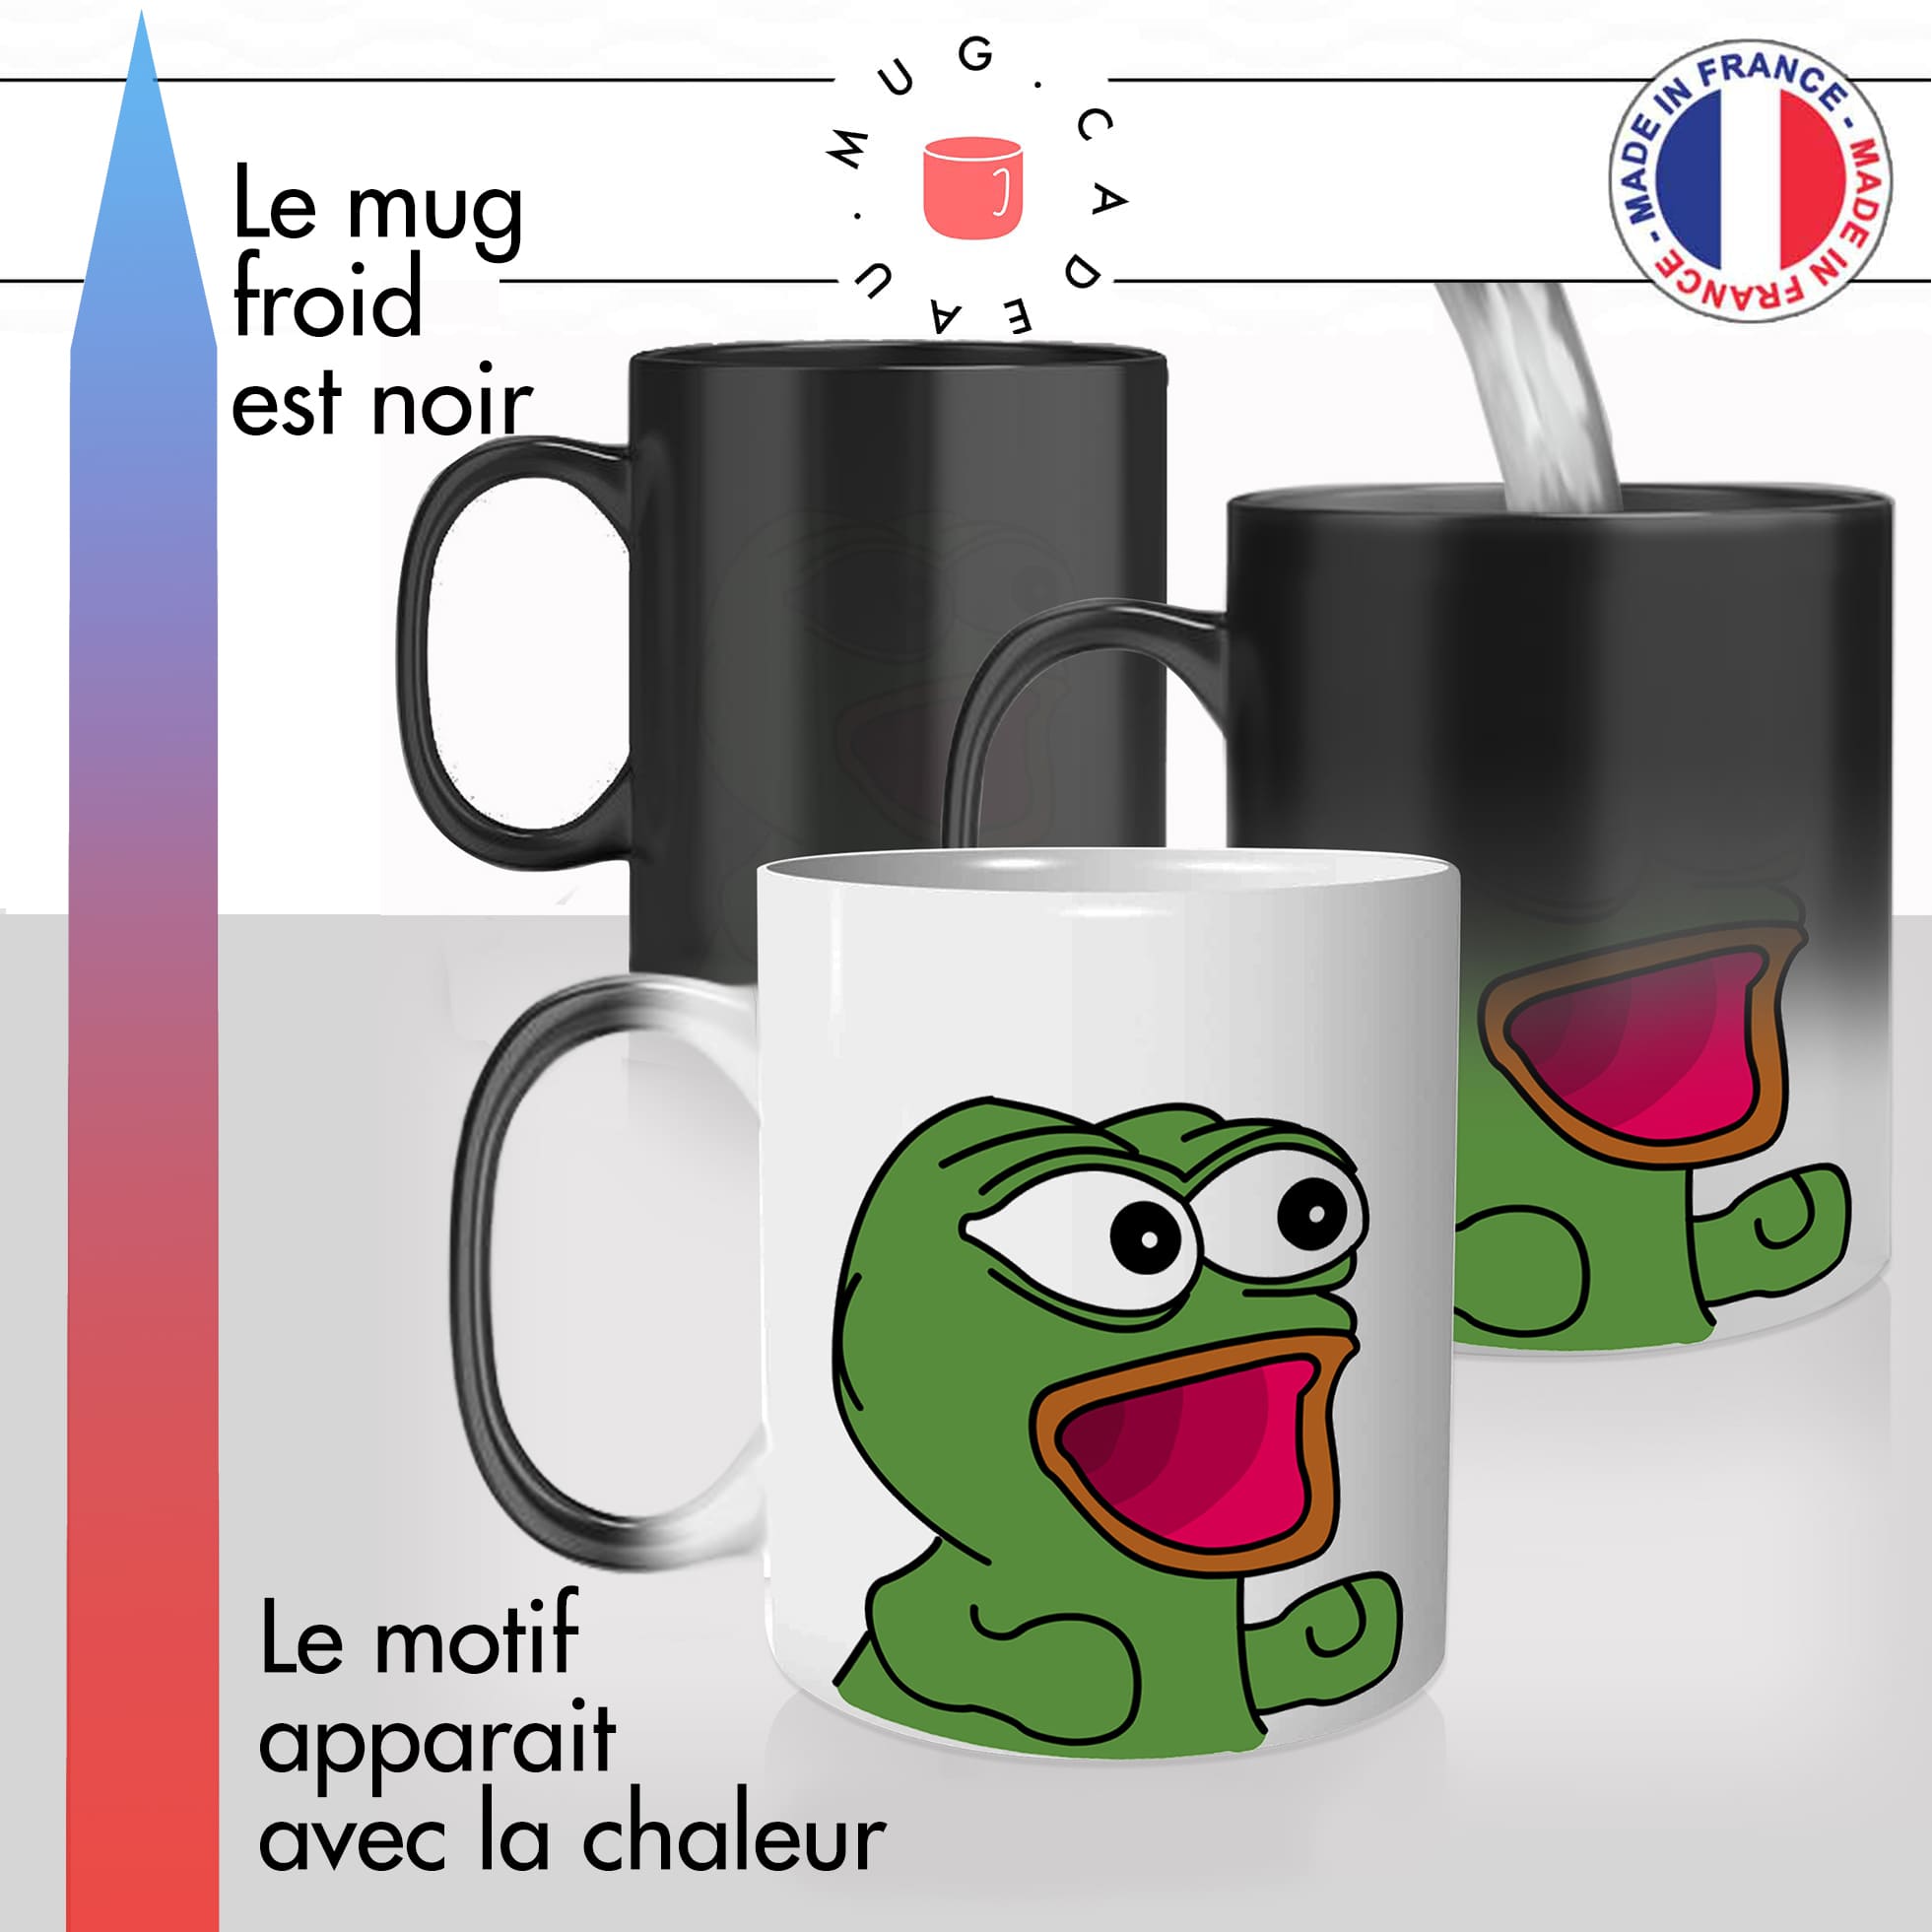 mug magique thermoréactif thermo chauffant personnalisé meme pepe frog content mignon happy geek drole idée cadeau fun original